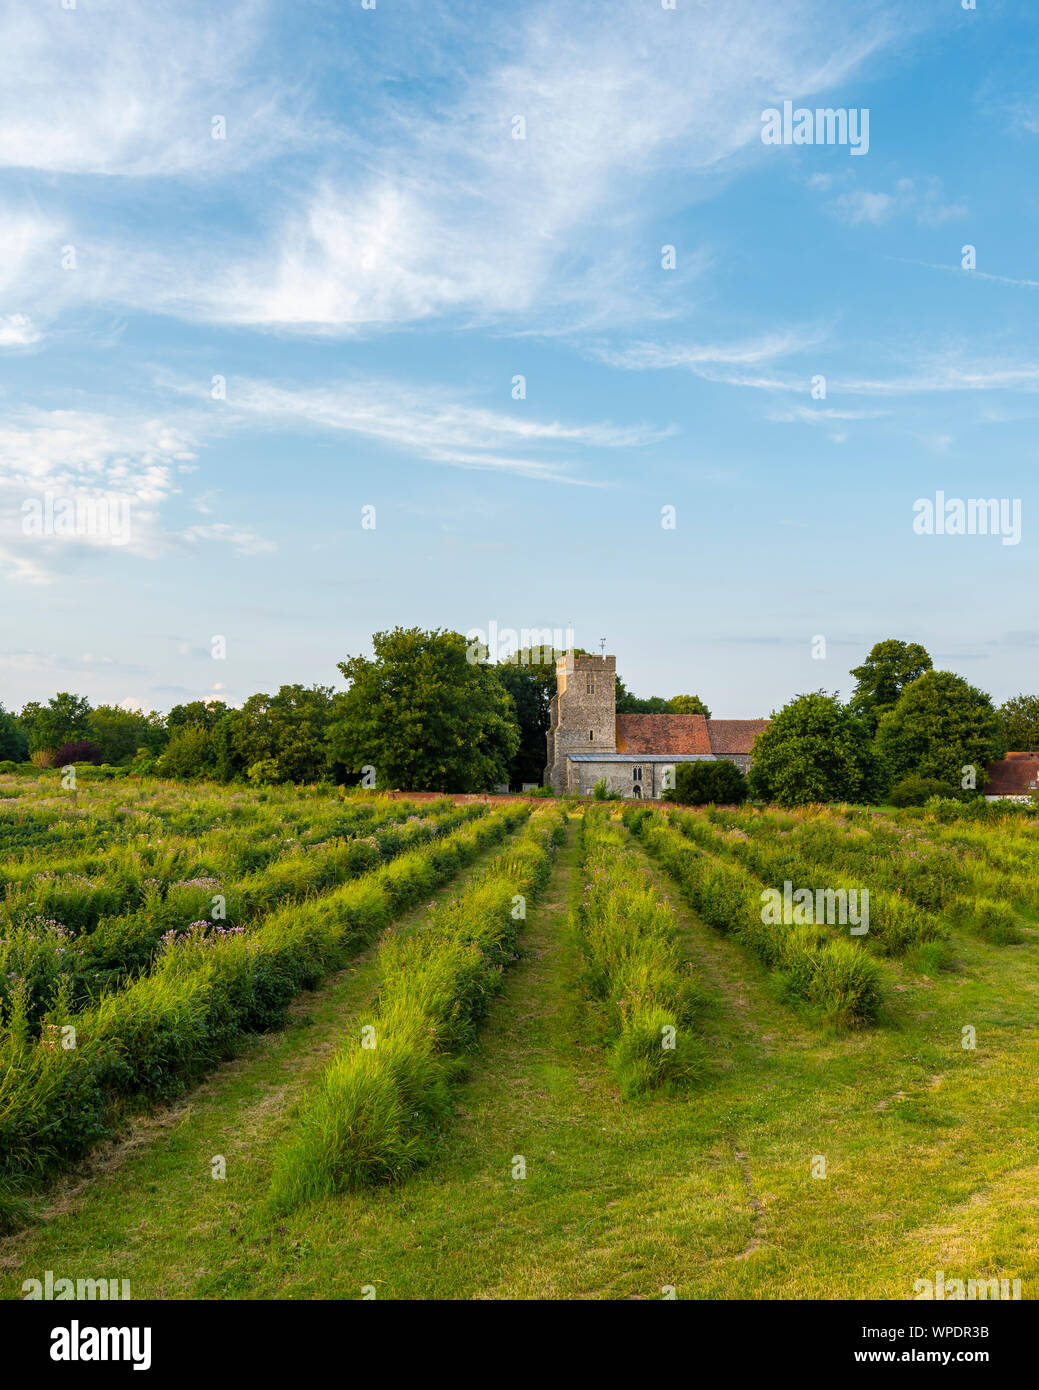 St Andrews Chiesa dietro le righe di ribes nero in Wickhambreaux; un piccolo villaggio rurale nel Kent. Foto Stock